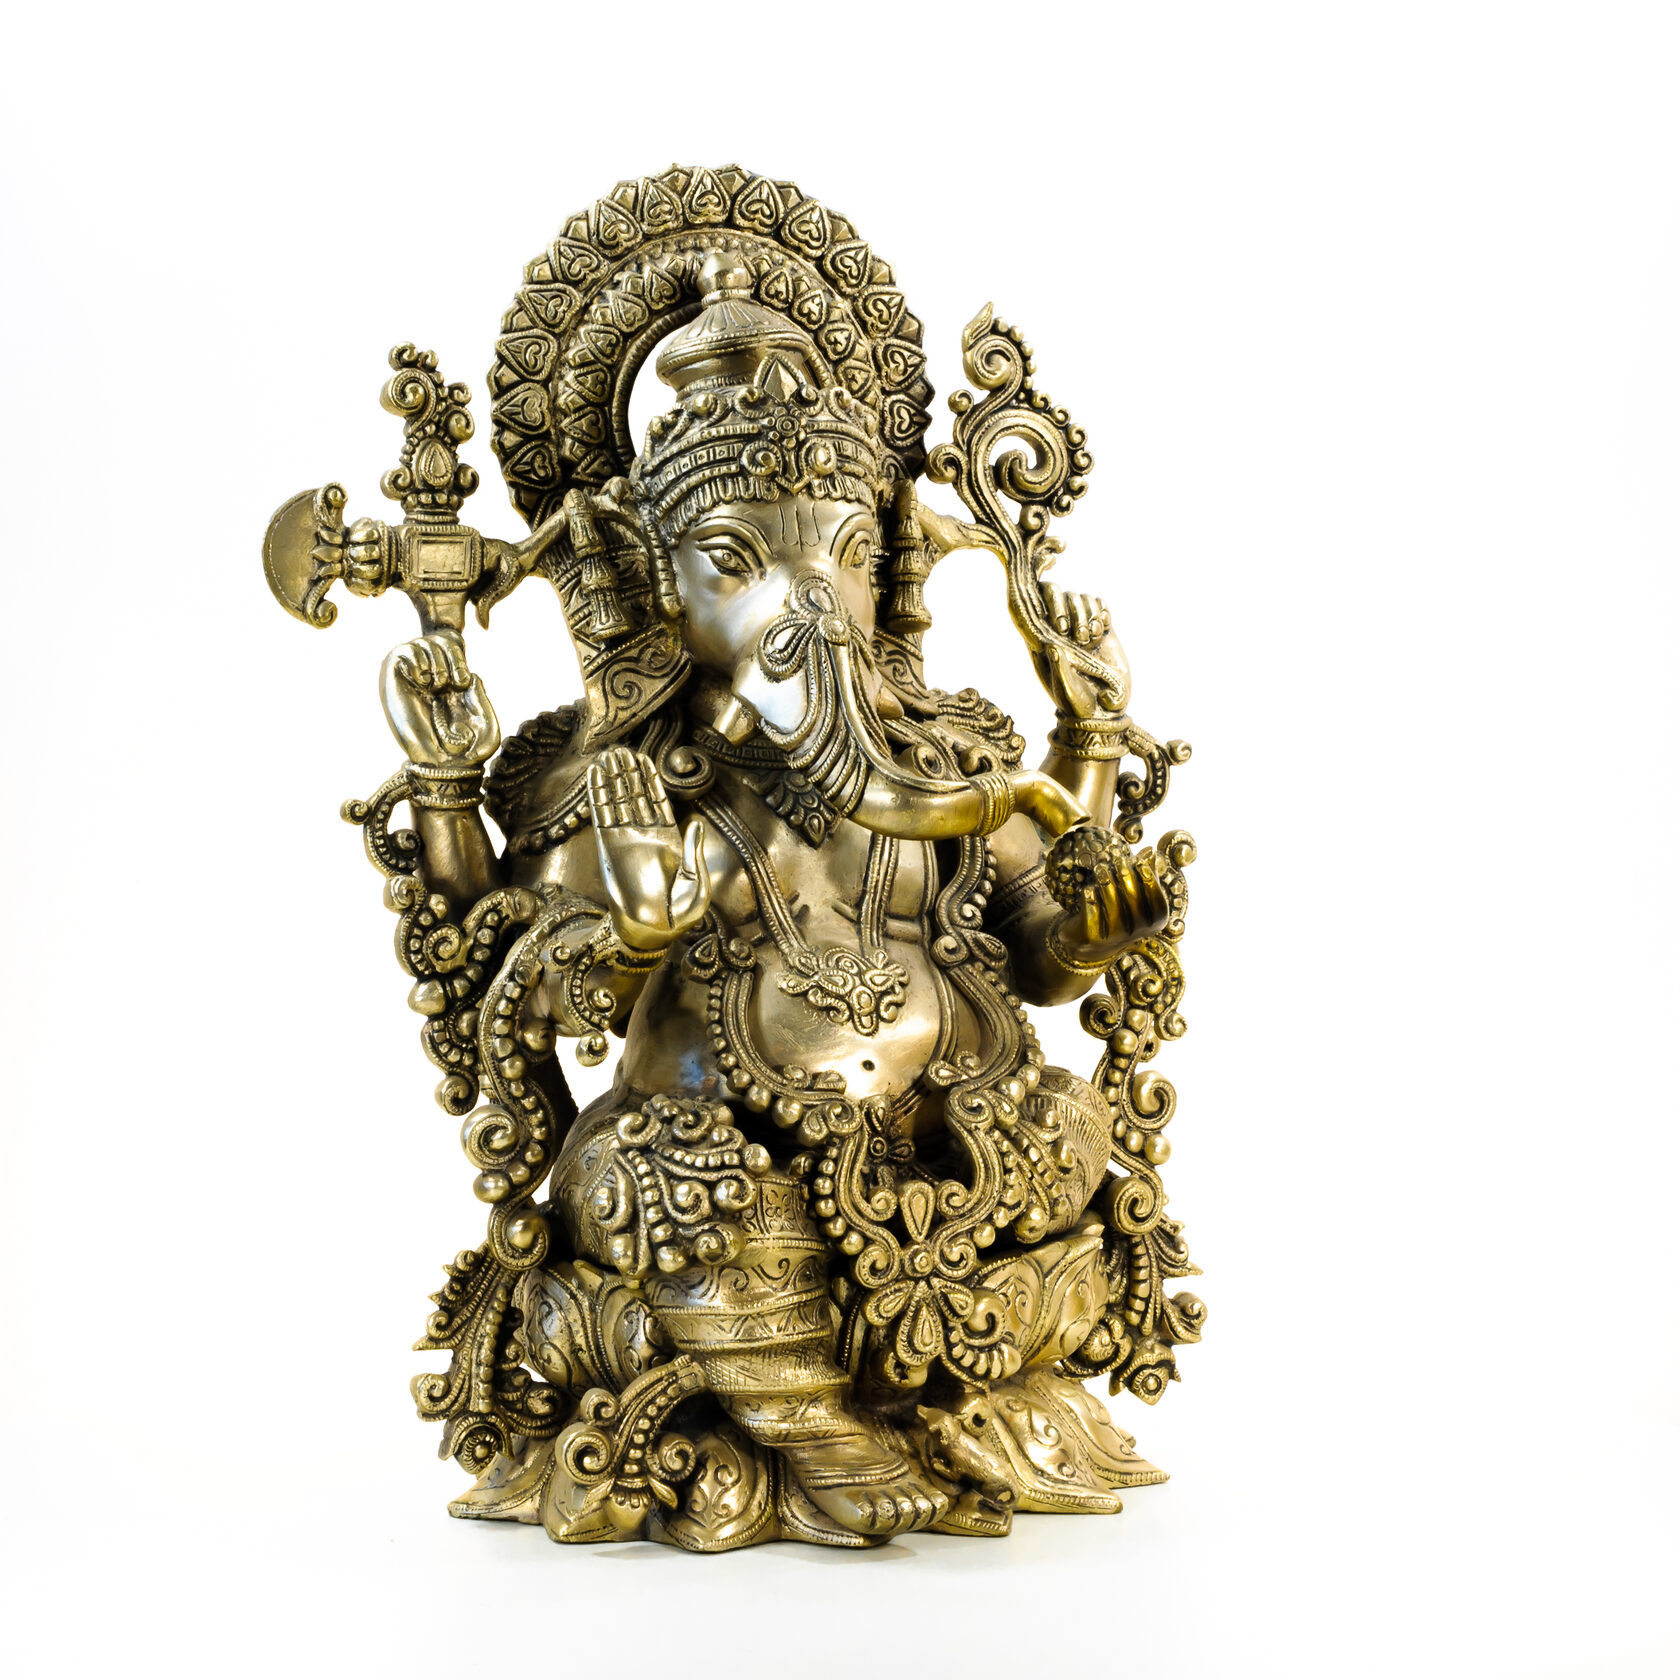 предметная фотосъемка на белом фоне фигурка индийский бог ганеша 